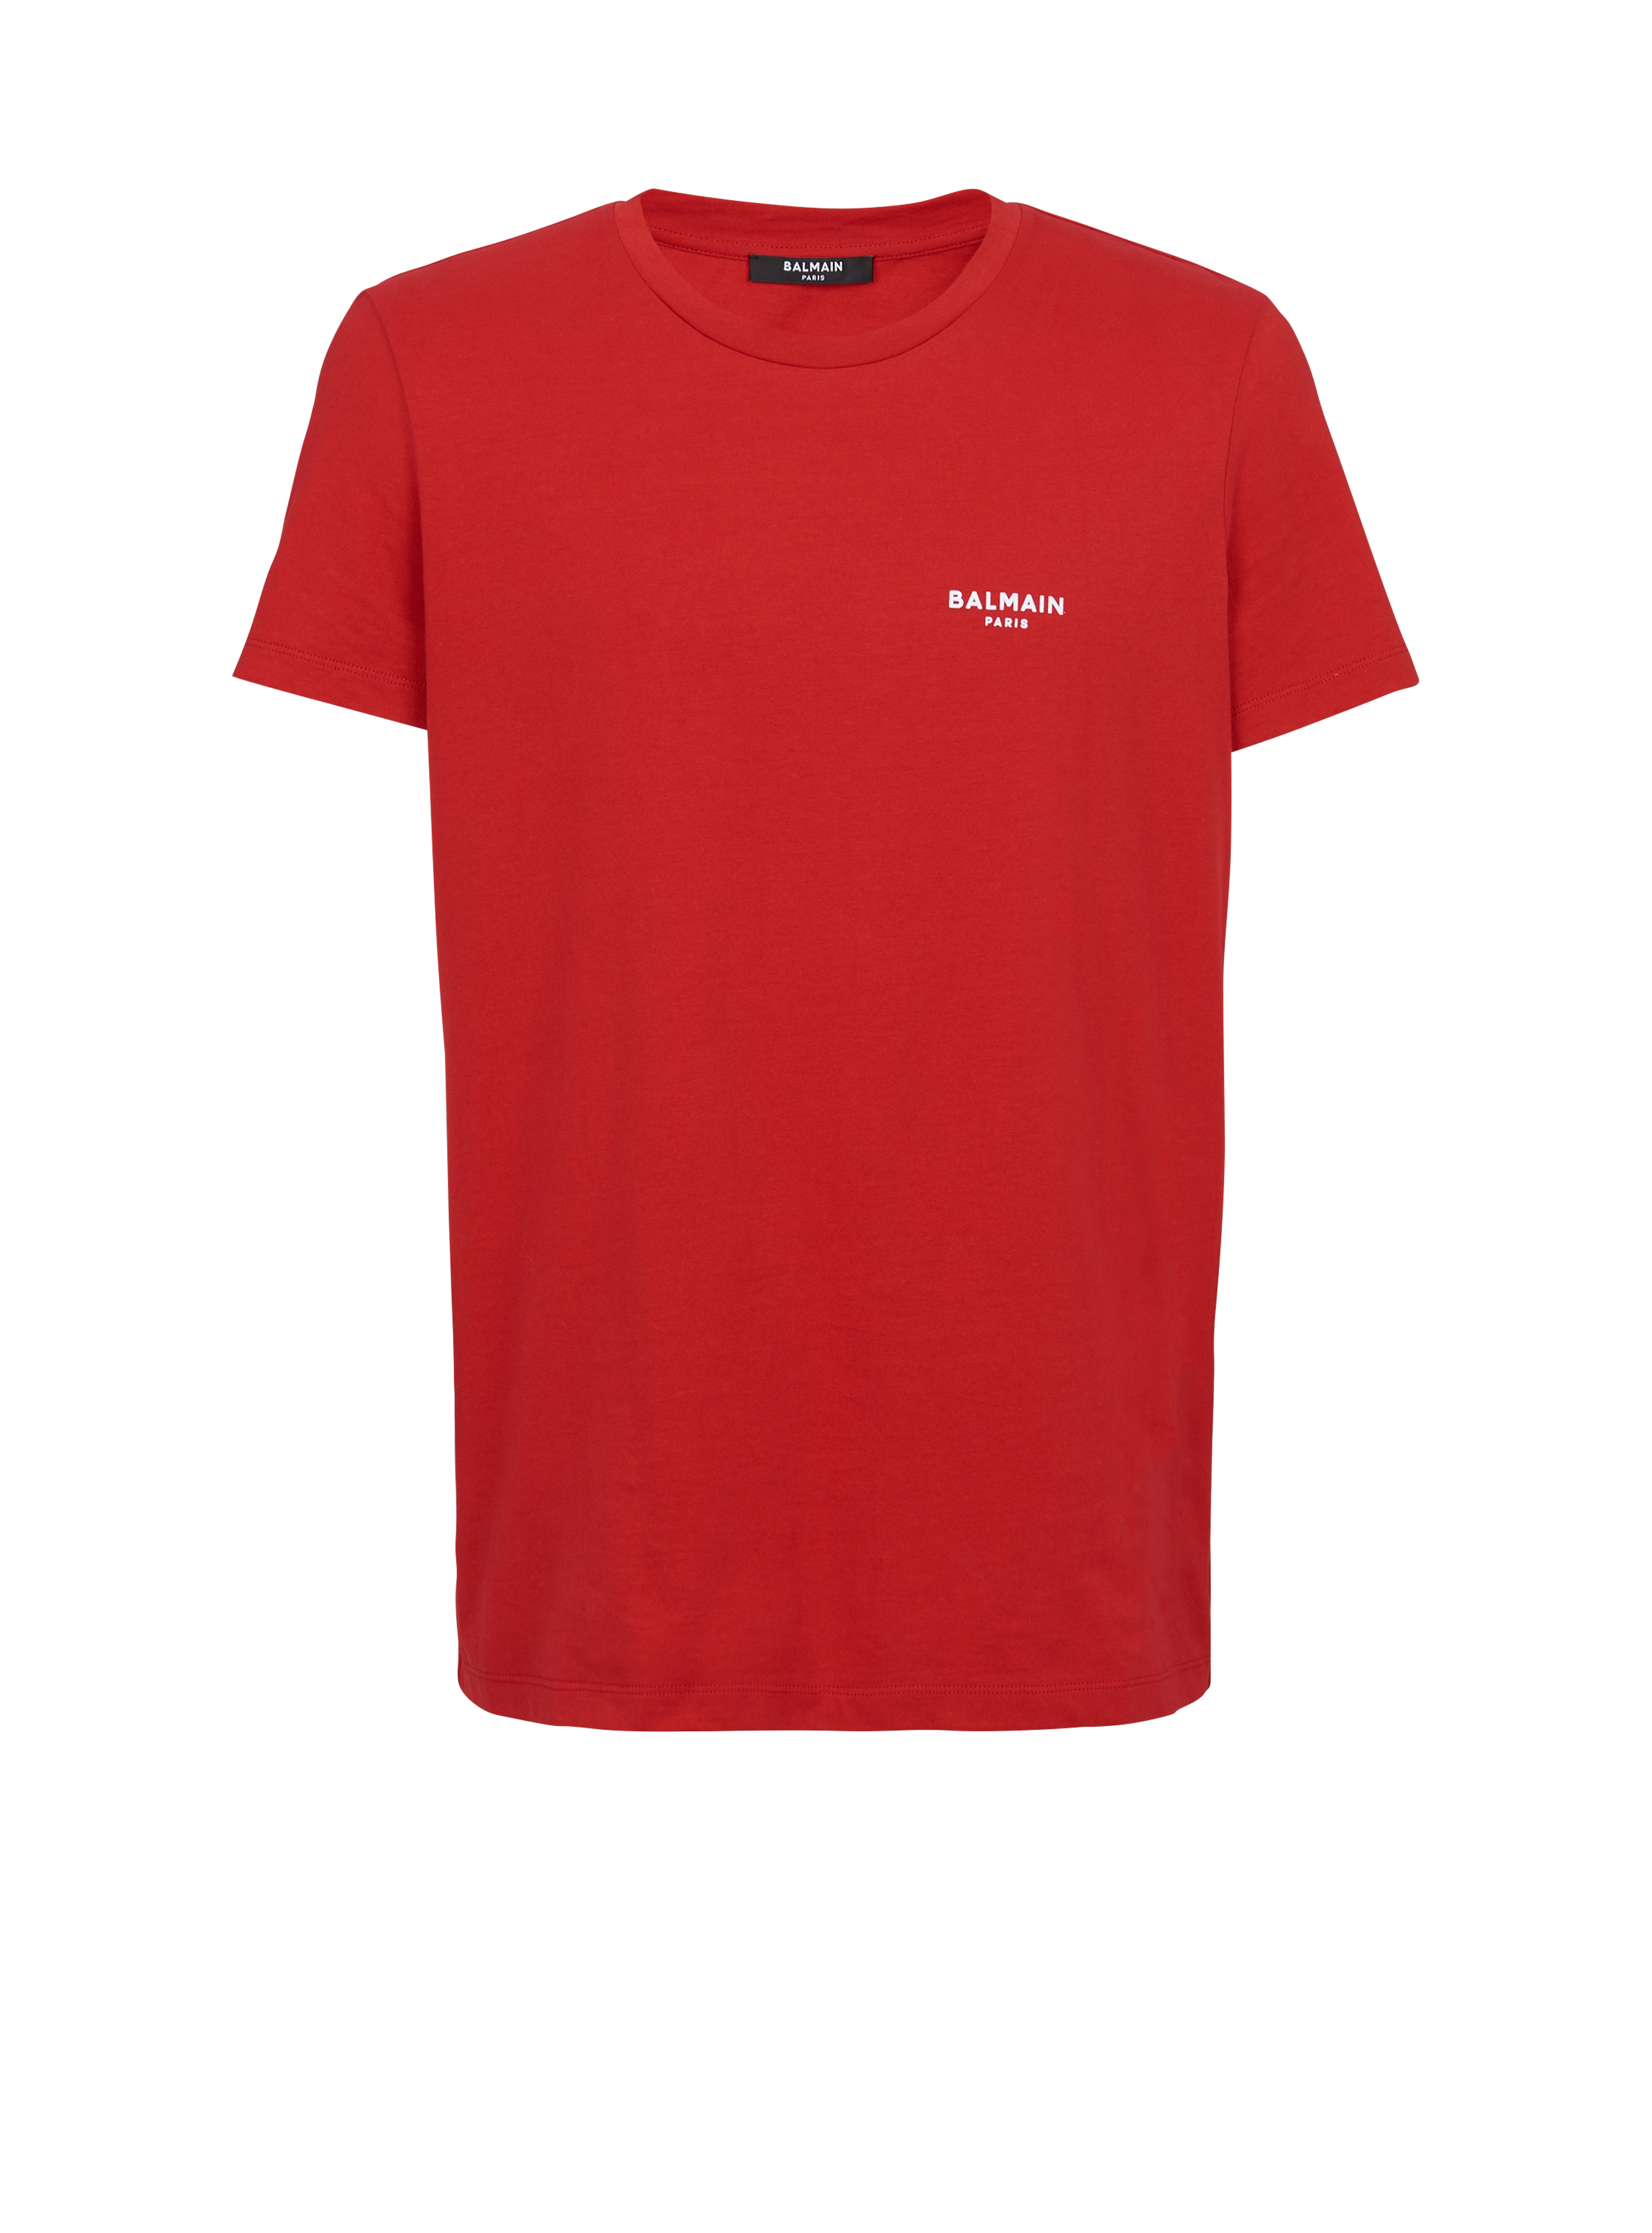 T-shirt en coton floqué petit logo Balmain Paris, rouge